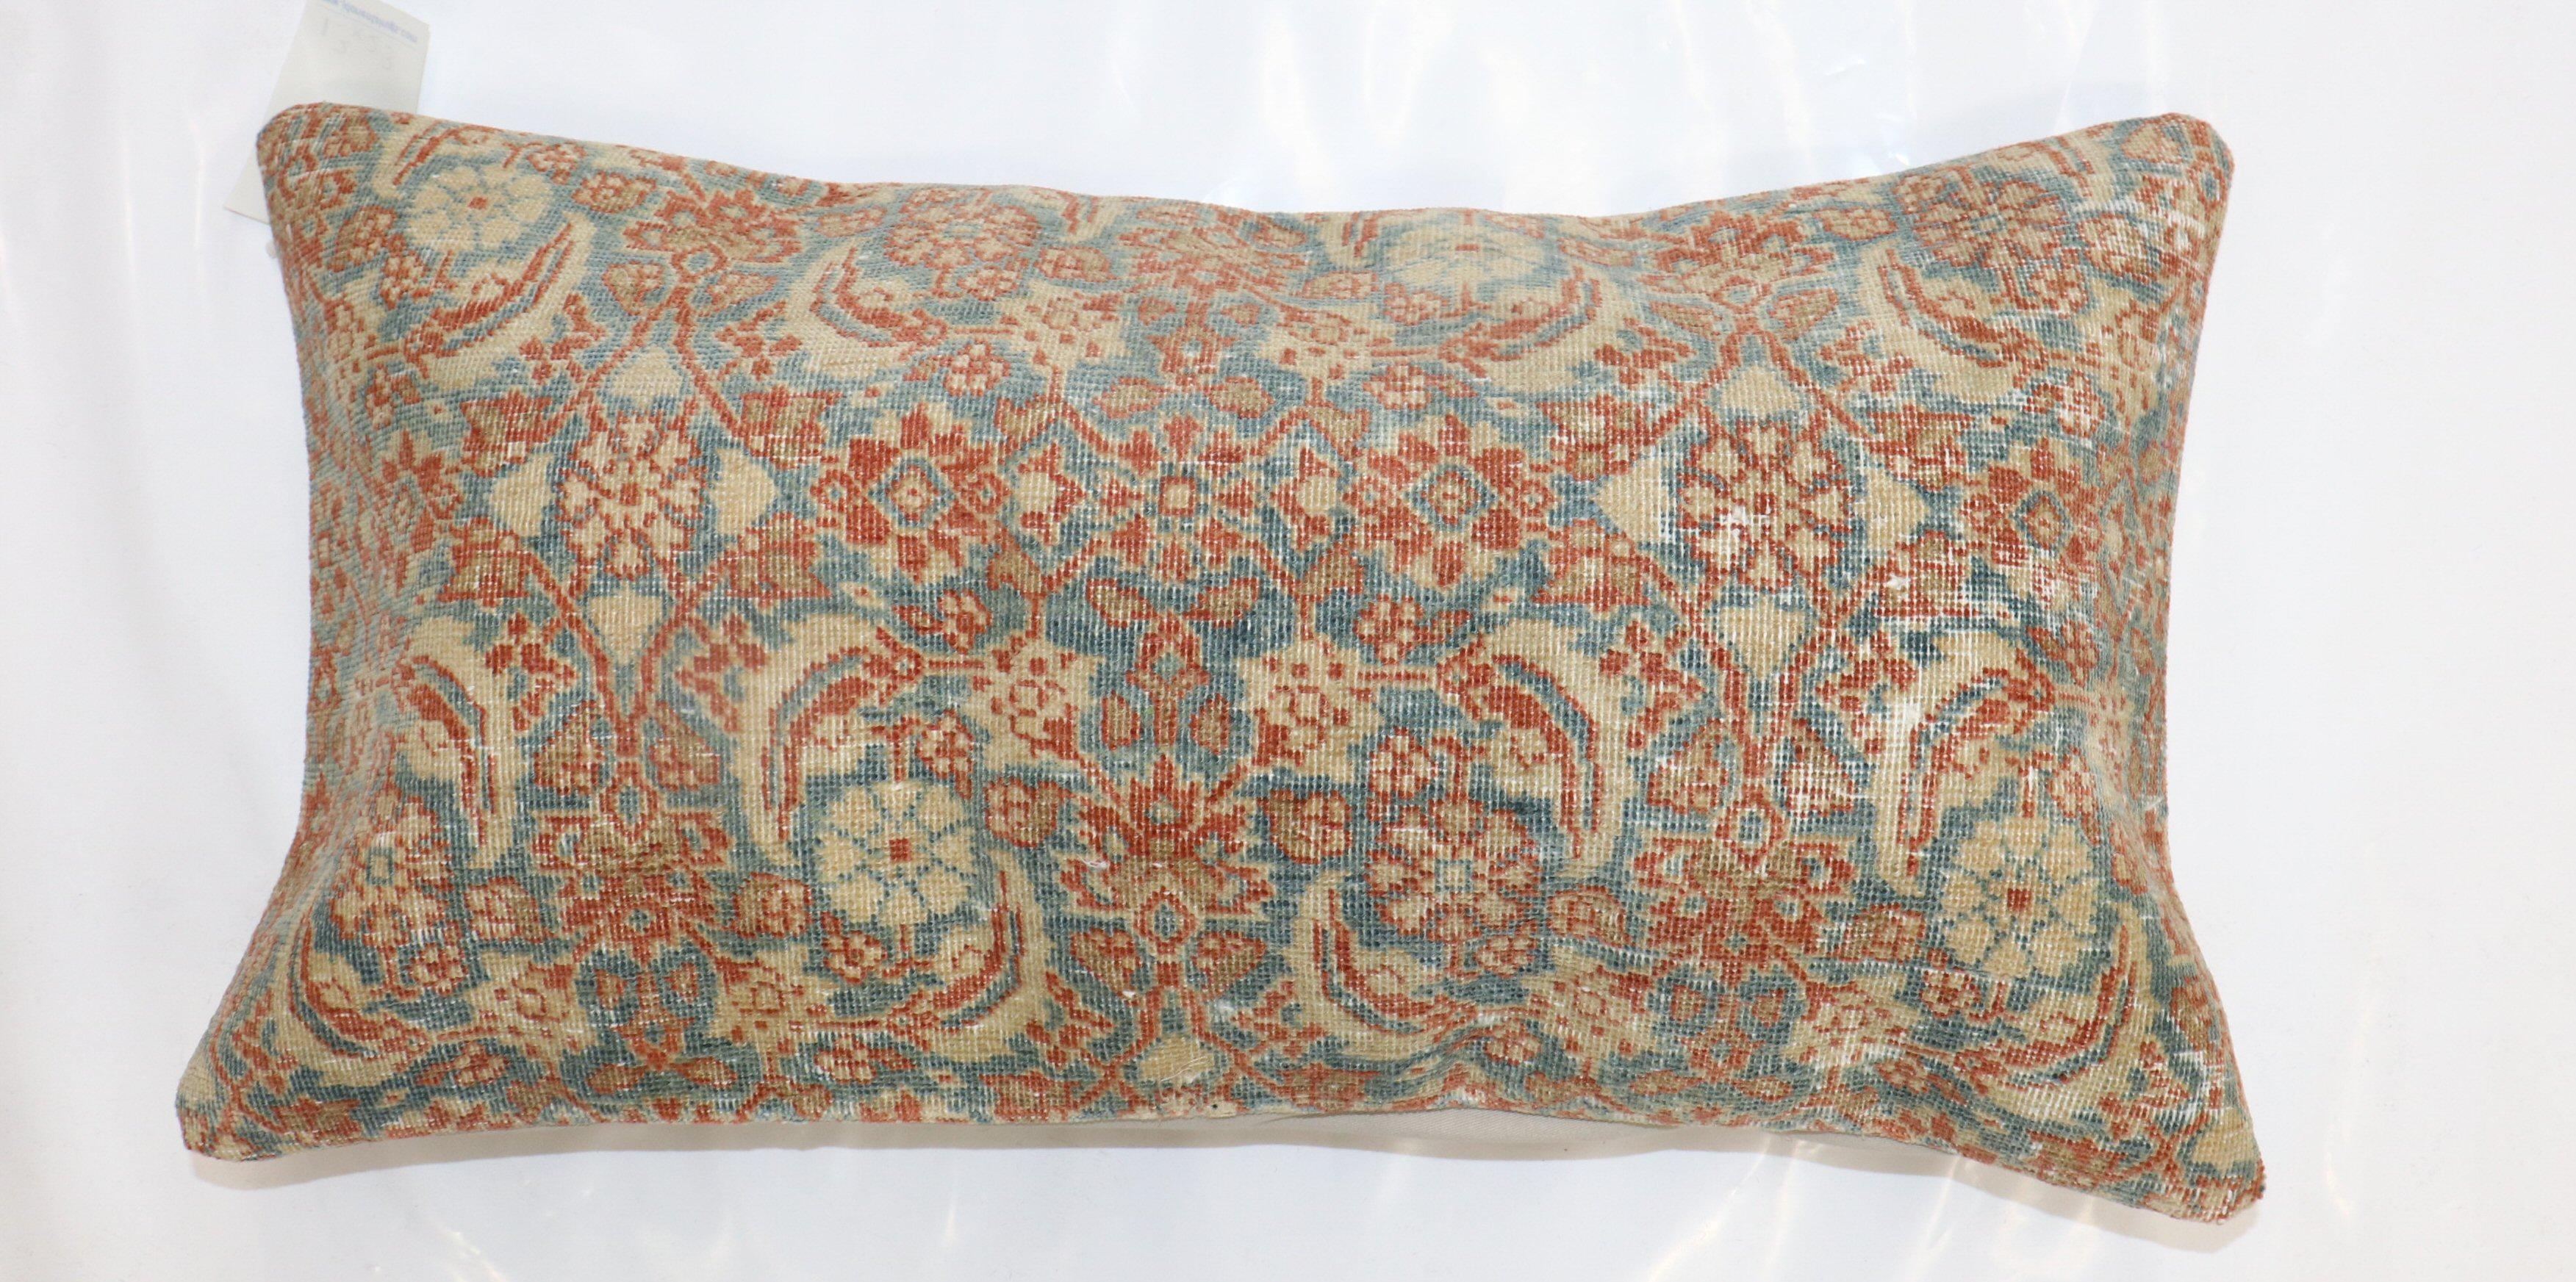 Kissen aus einem fein gewebten persischen Senneh-Teppich.

Maße: 14'' x 26''.